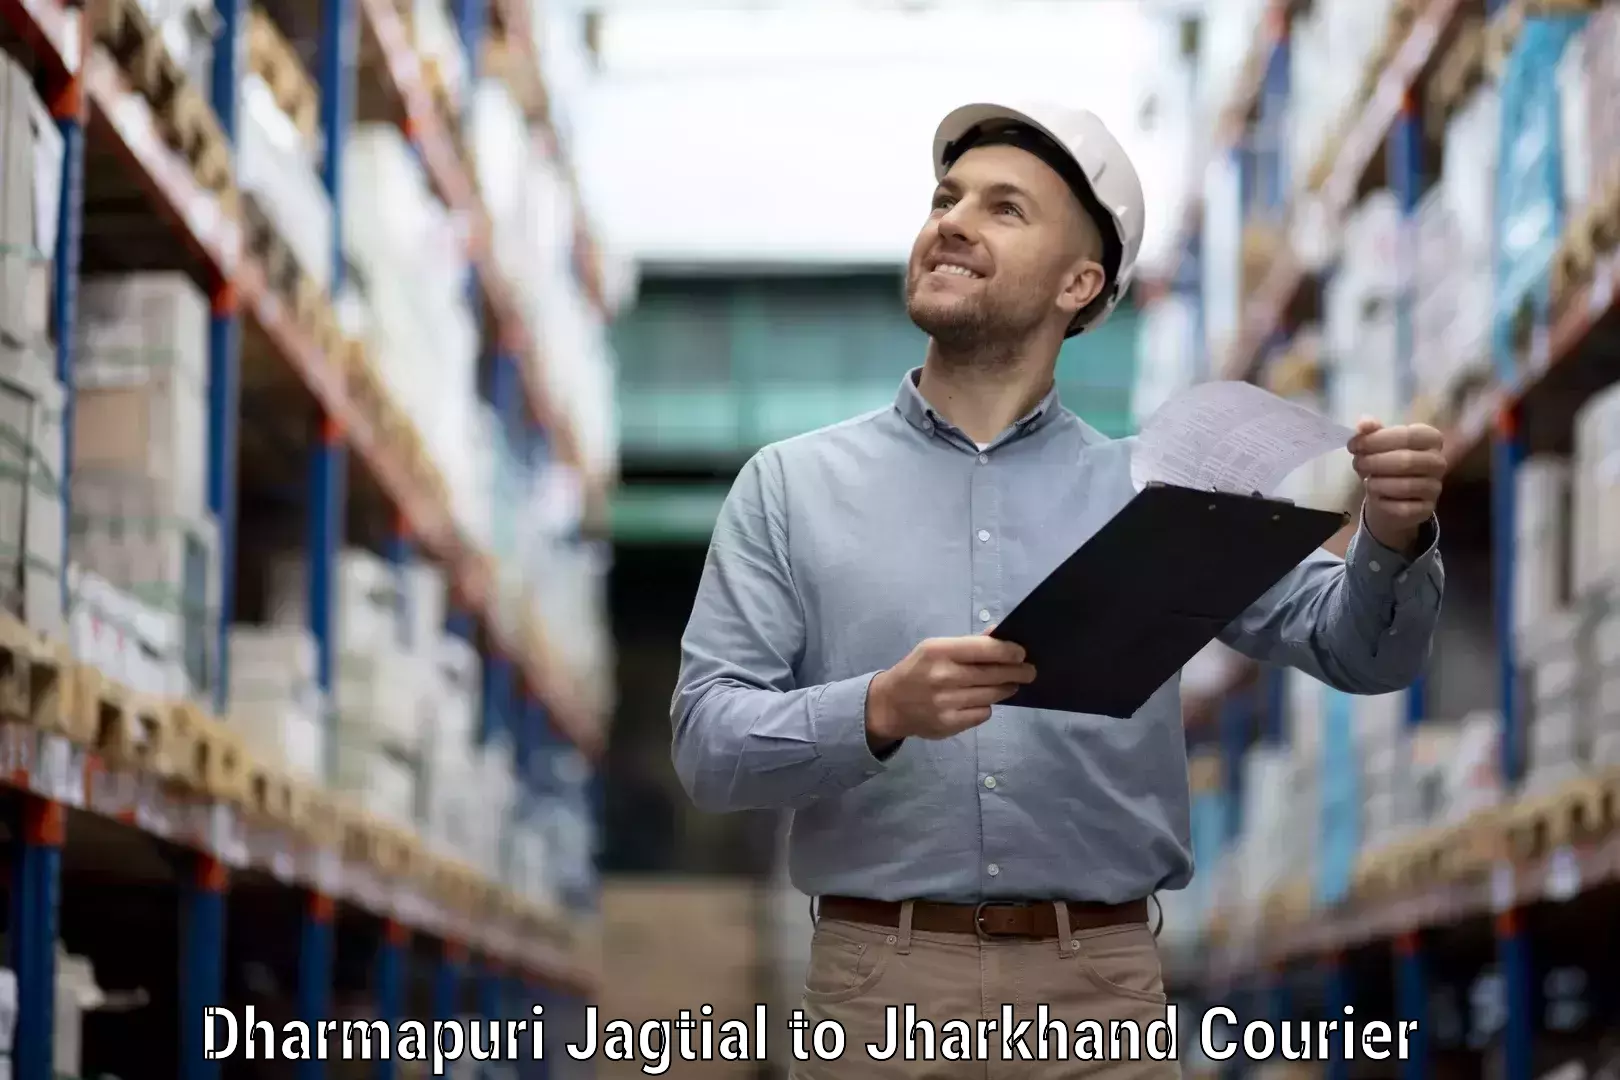 Ocean freight courier Dharmapuri Jagtial to Padma Hazaribagh